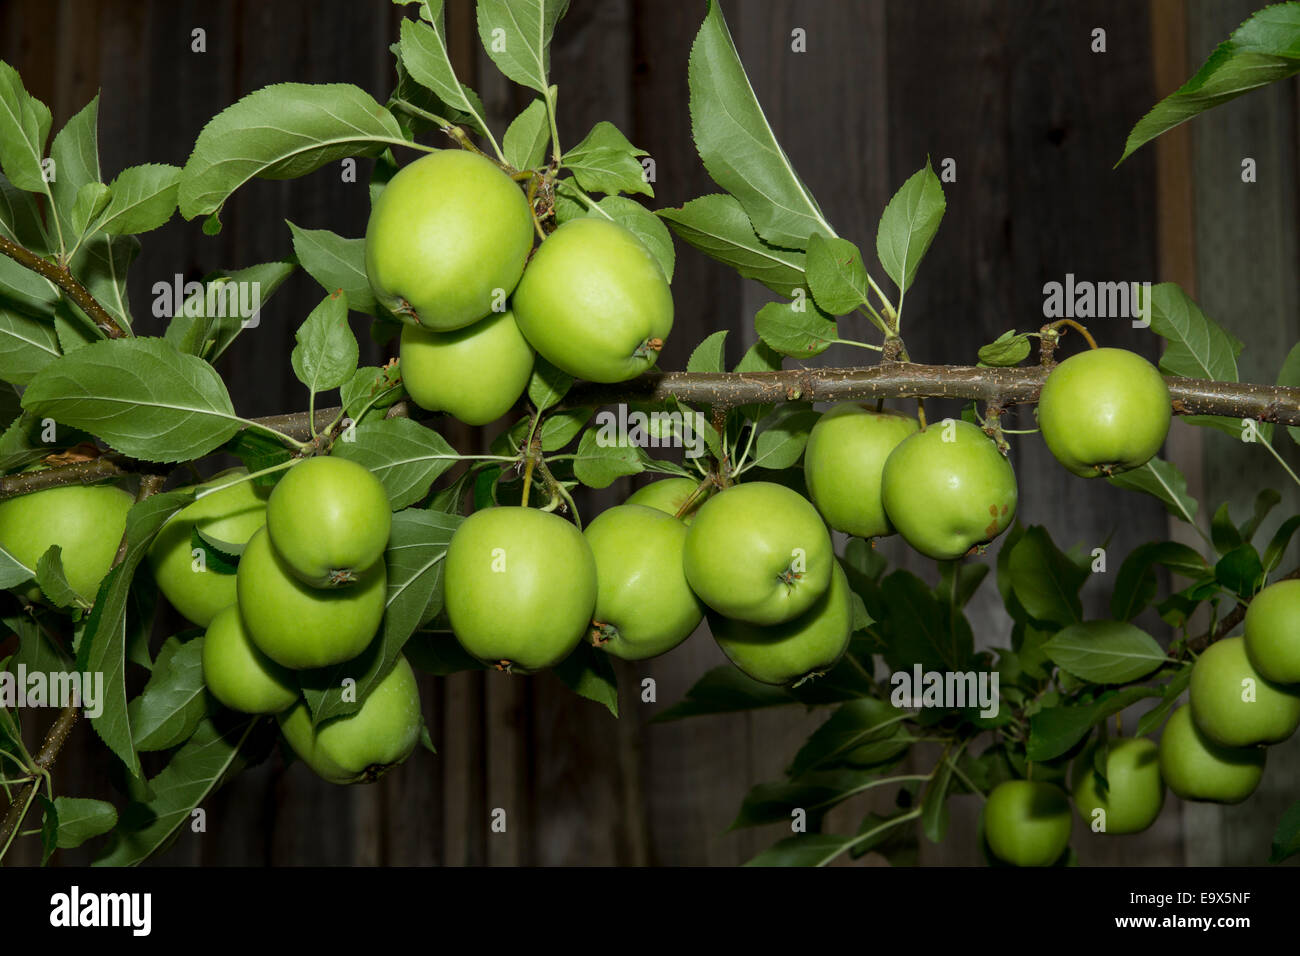 Manzana Verde, manzana verde, manzana, manzanas, Apple tree, huerto de manzanas, Malus domestica, Novato, Marin County, California, Estados Unidos, América del Norte Foto de stock